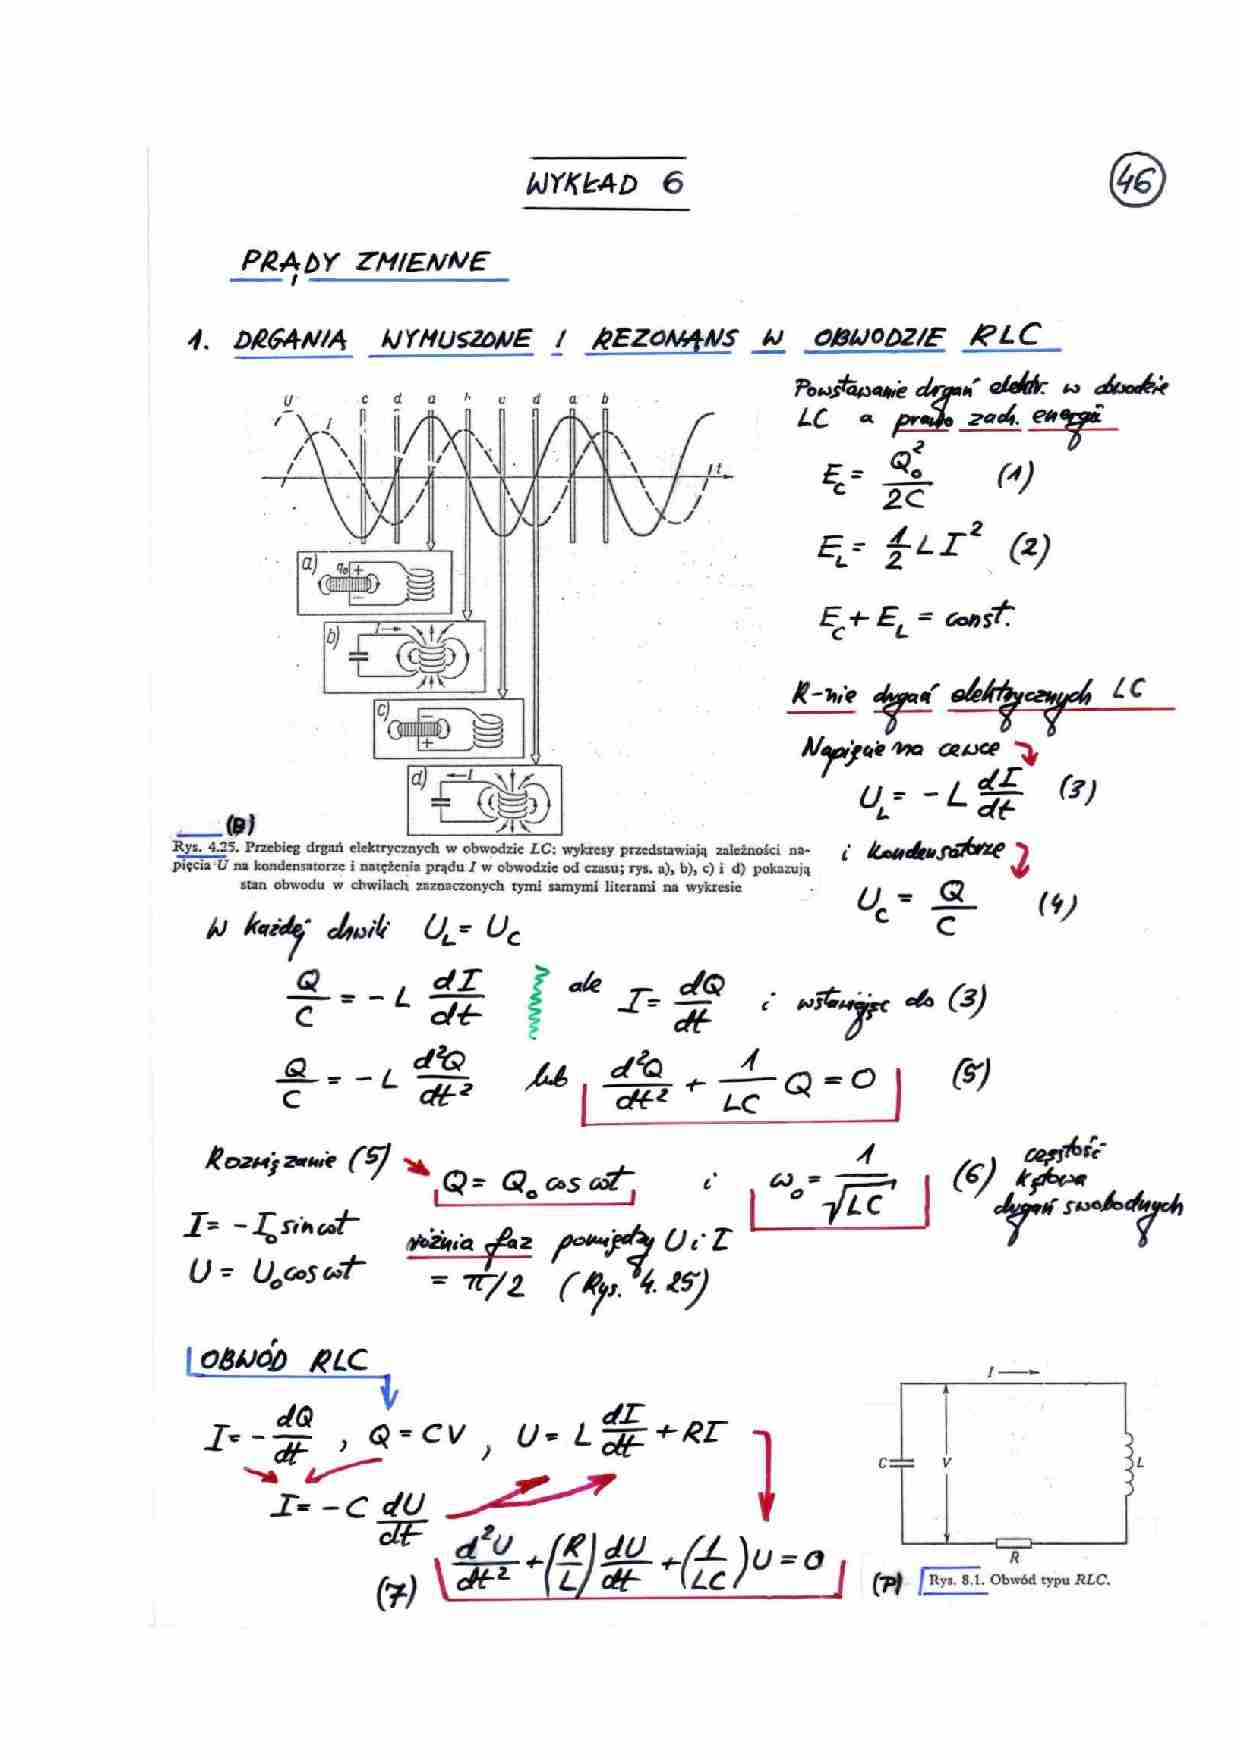 Prądy zmienne - notatki z wykładu z fizyki - strona 1